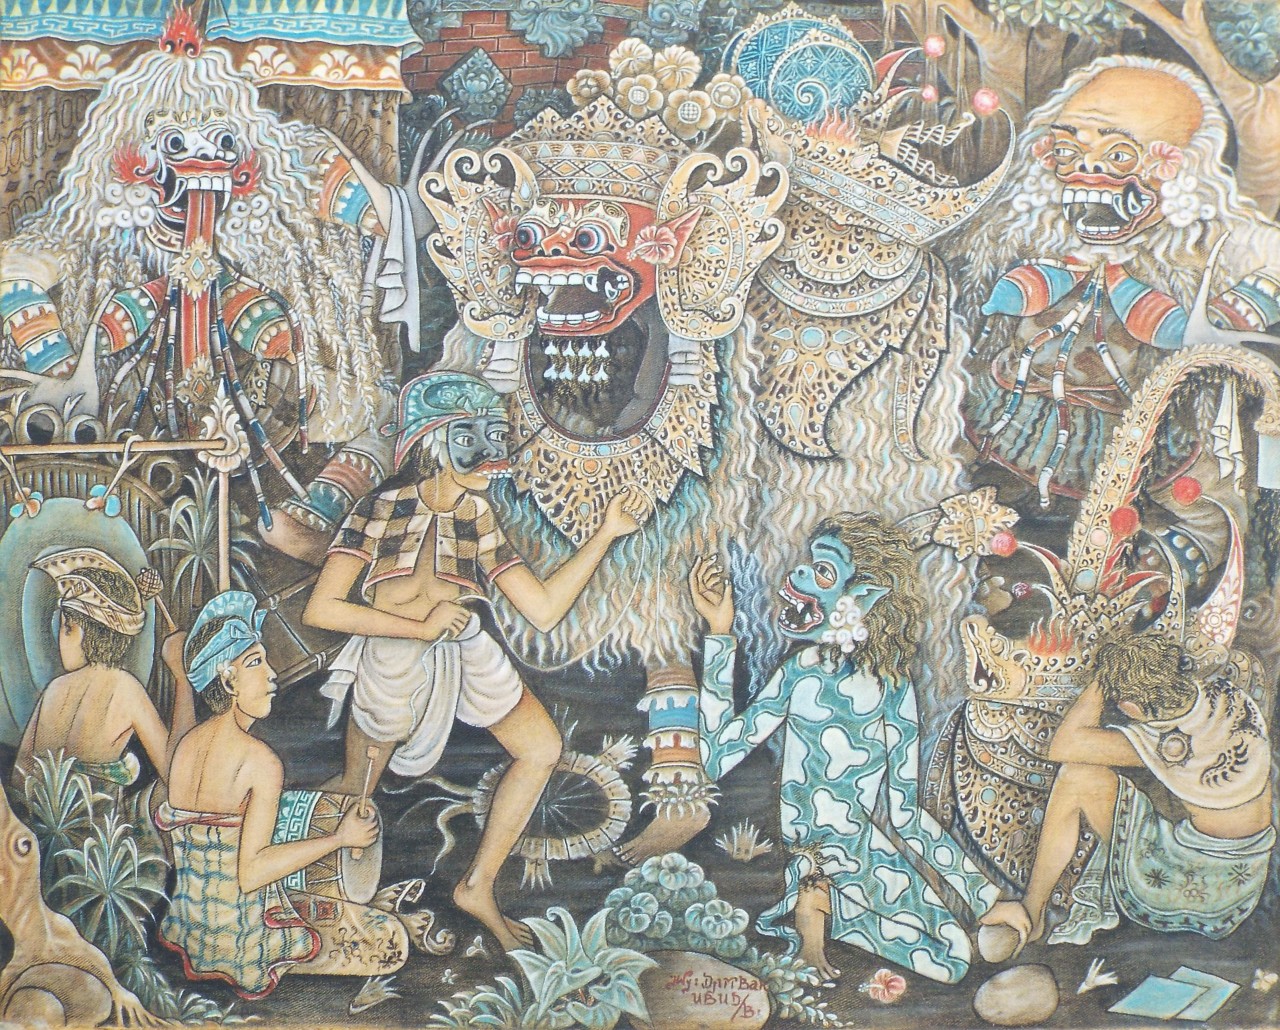 Watercolour - Balinese Batuan school painting